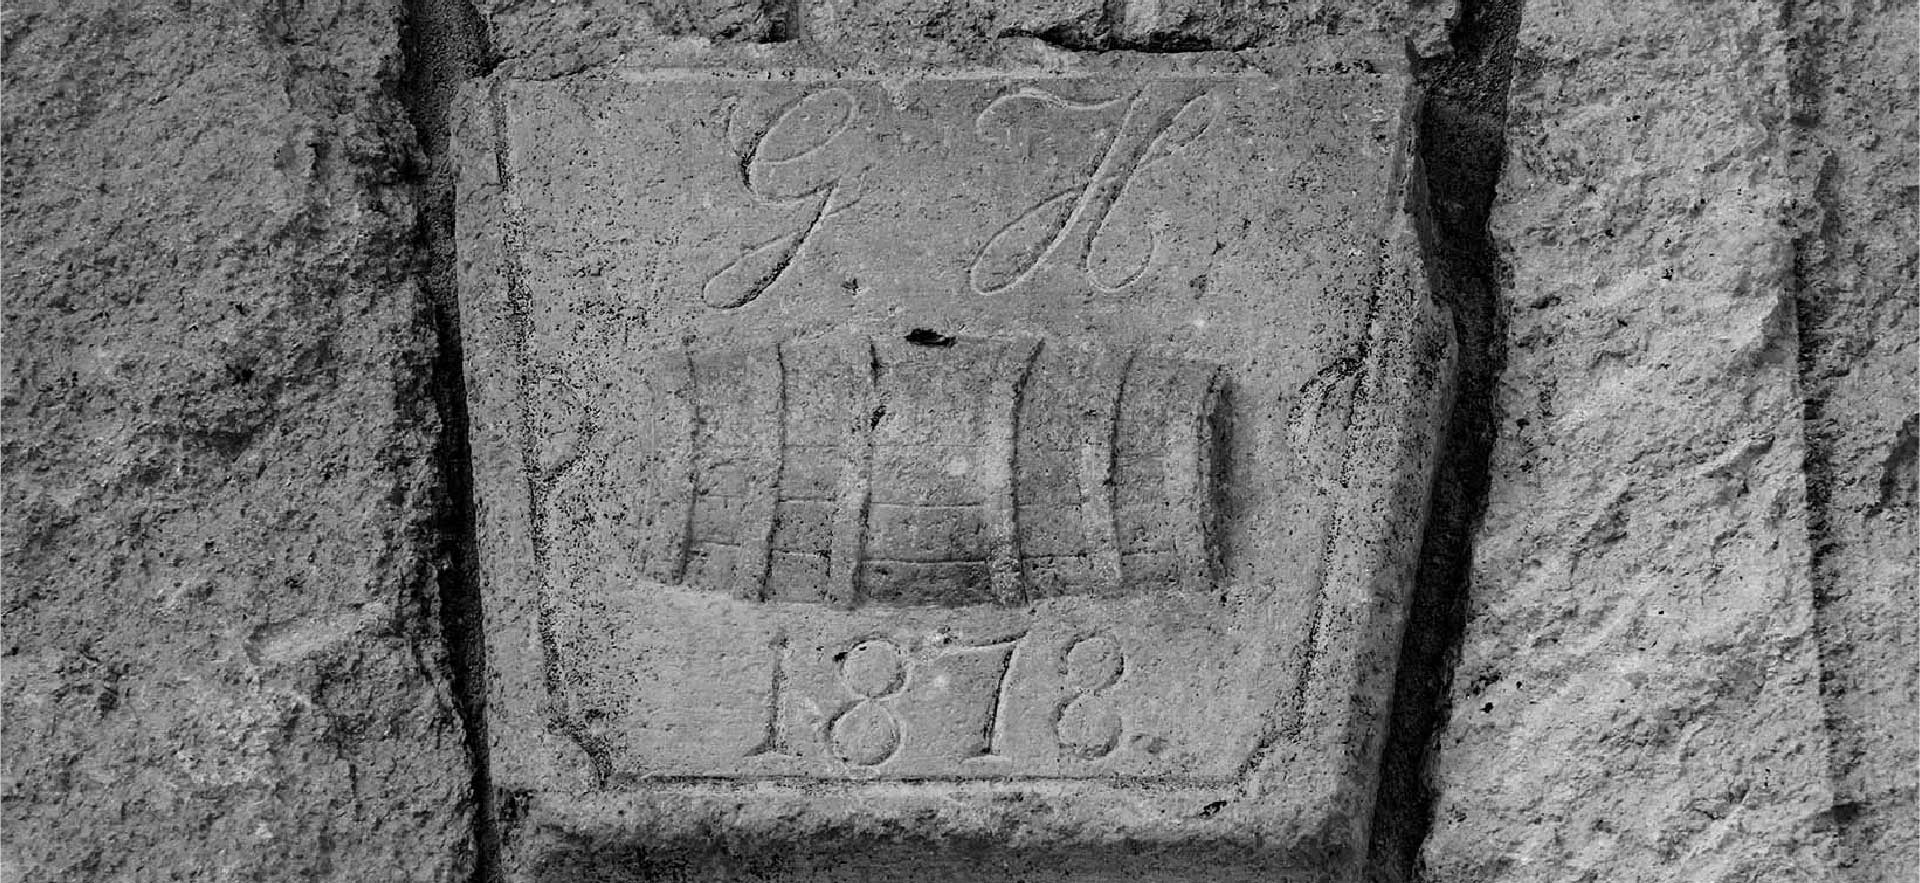 Inscription in rock: 1878